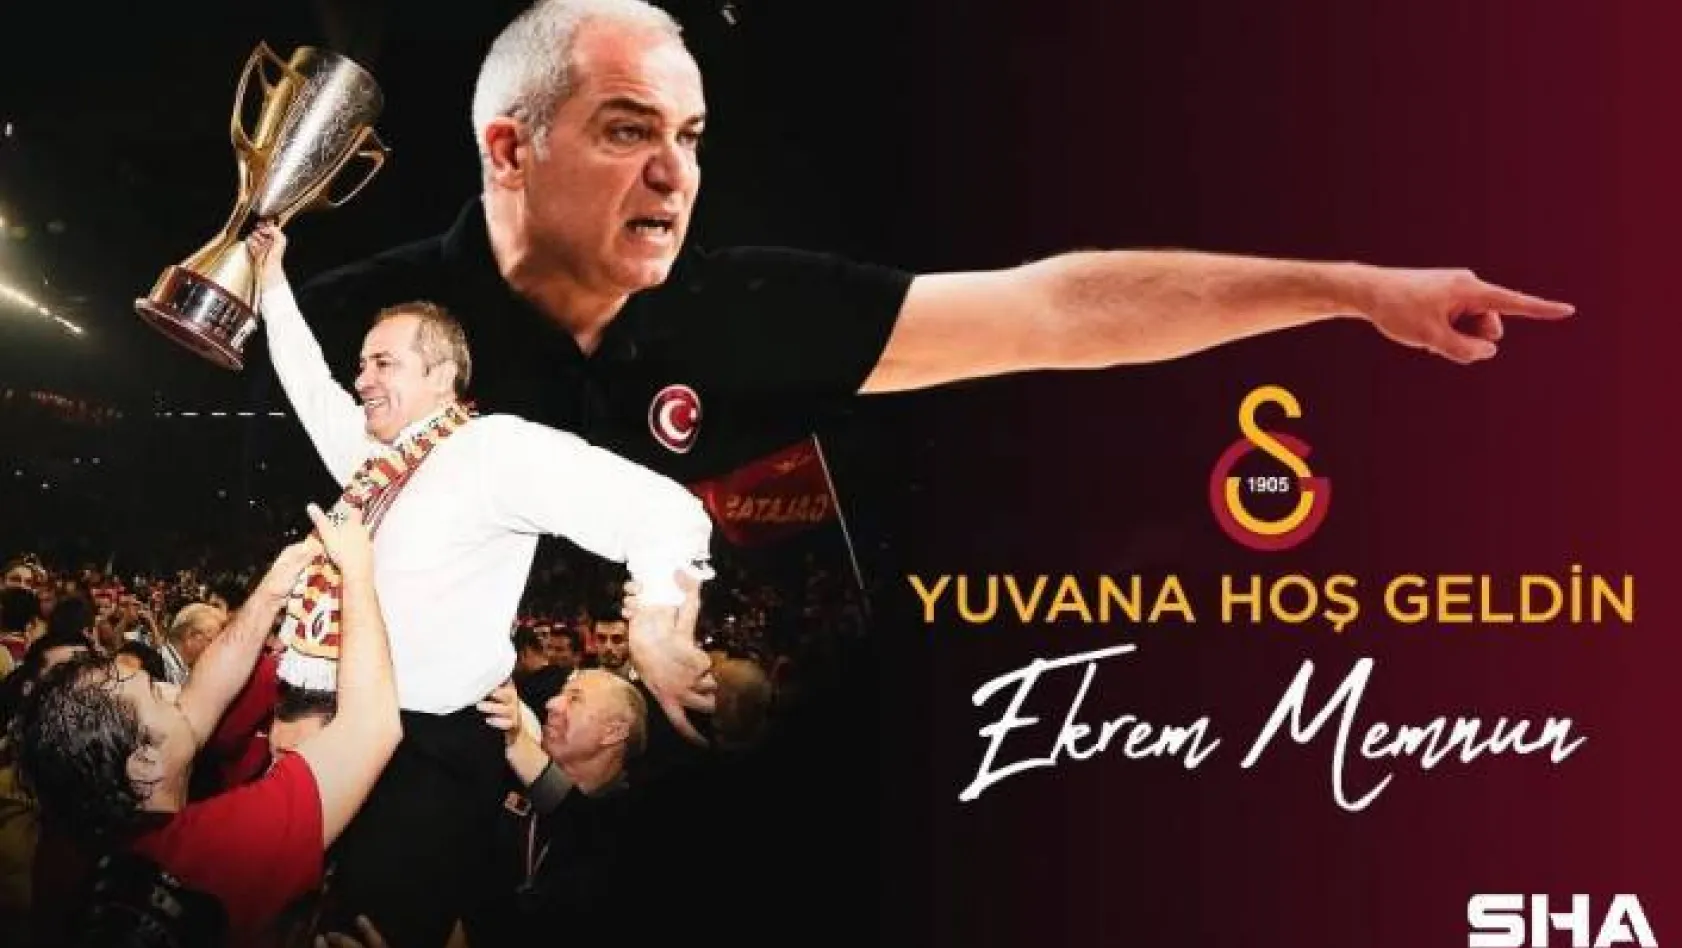 Galatasaray Erkek Basketbol Takımı, Ekrem Memnun'a emanet